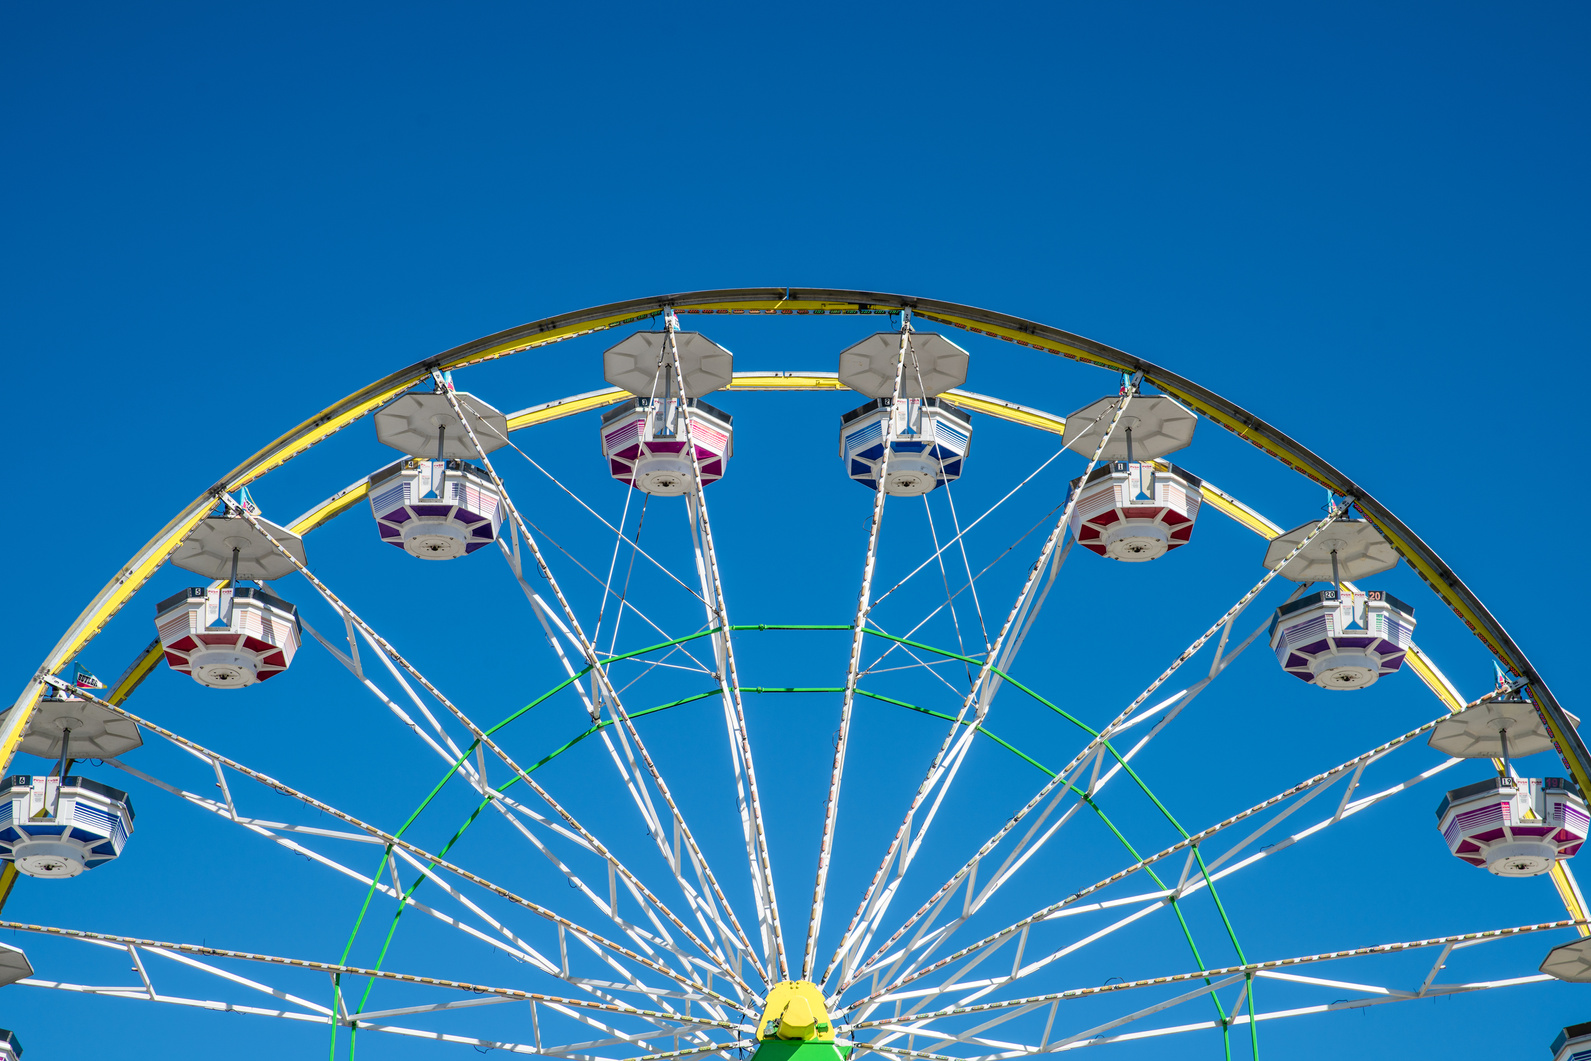 Ferris Wheel - Old Carnival Ferris Wheel with Clean Skies